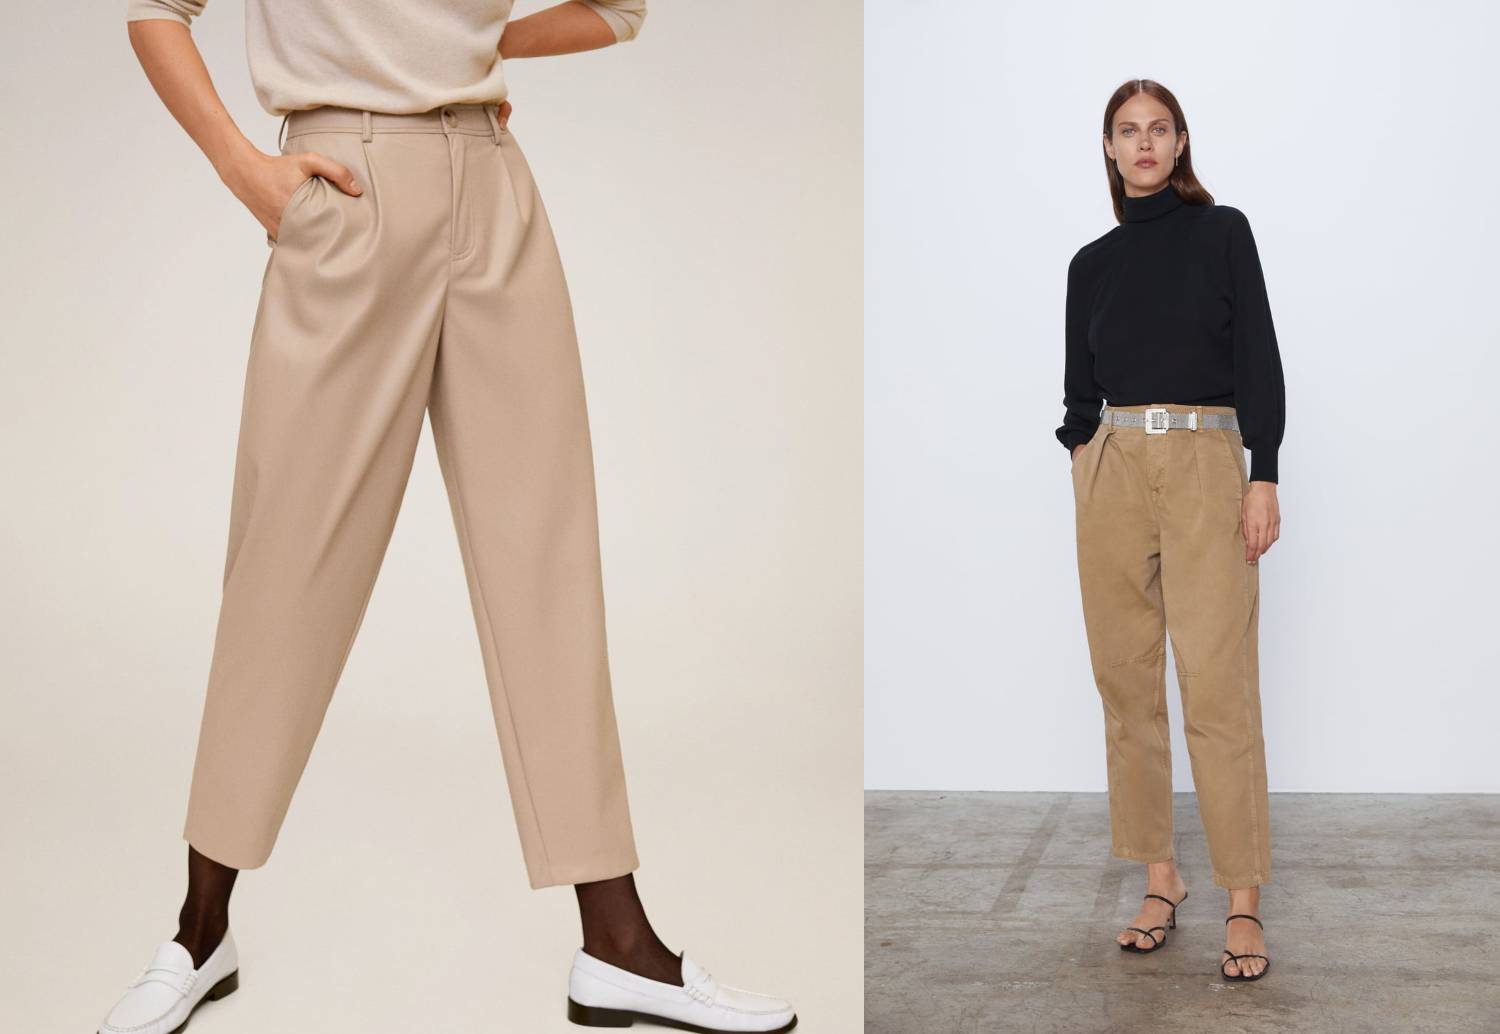 Povratak u modu: Široke kaki hlače iz devedesetih su trendi